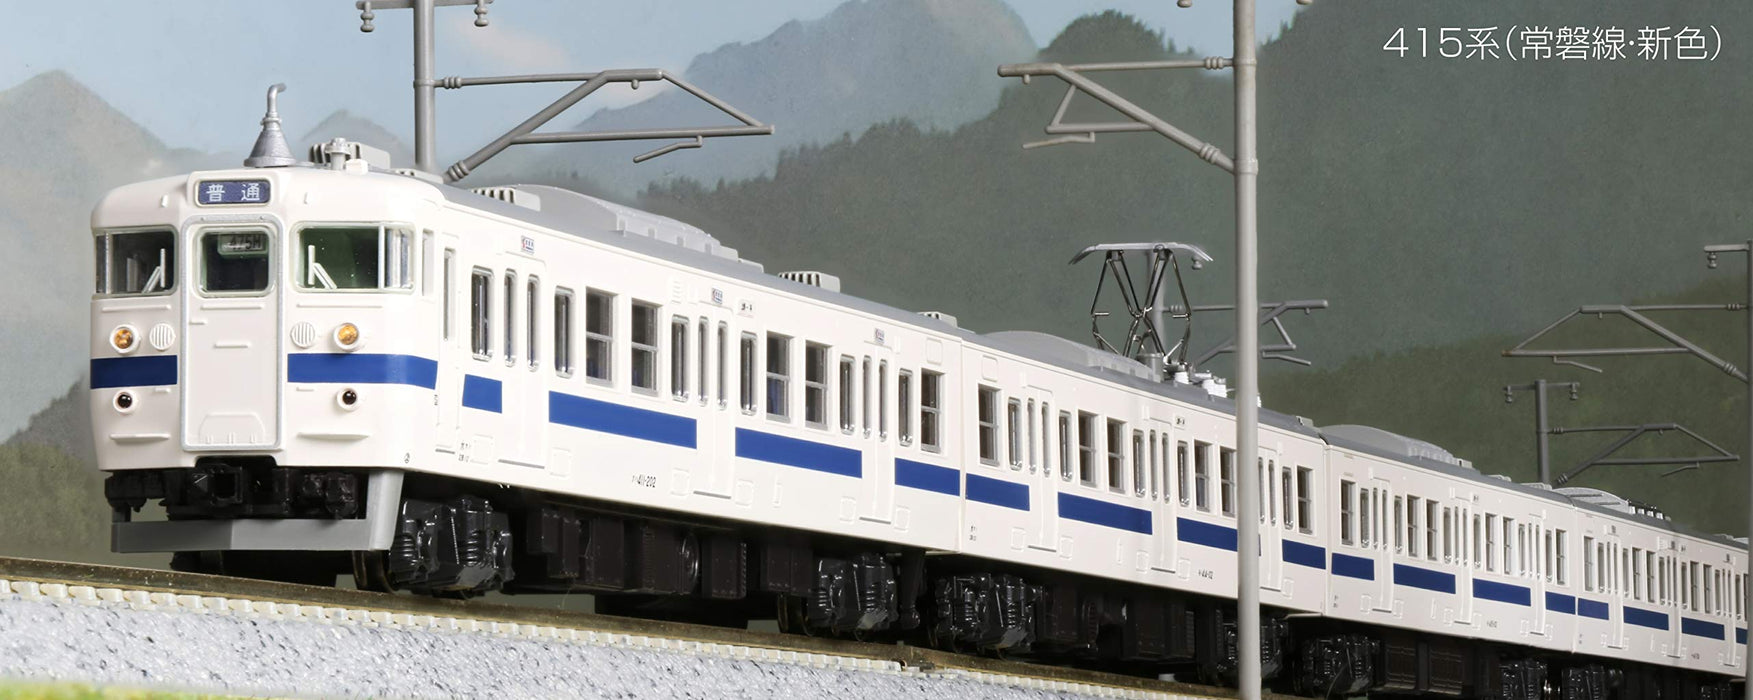 Kato Joban Line 4-Car Set - N Gauge 10-1536 New Color Model Train